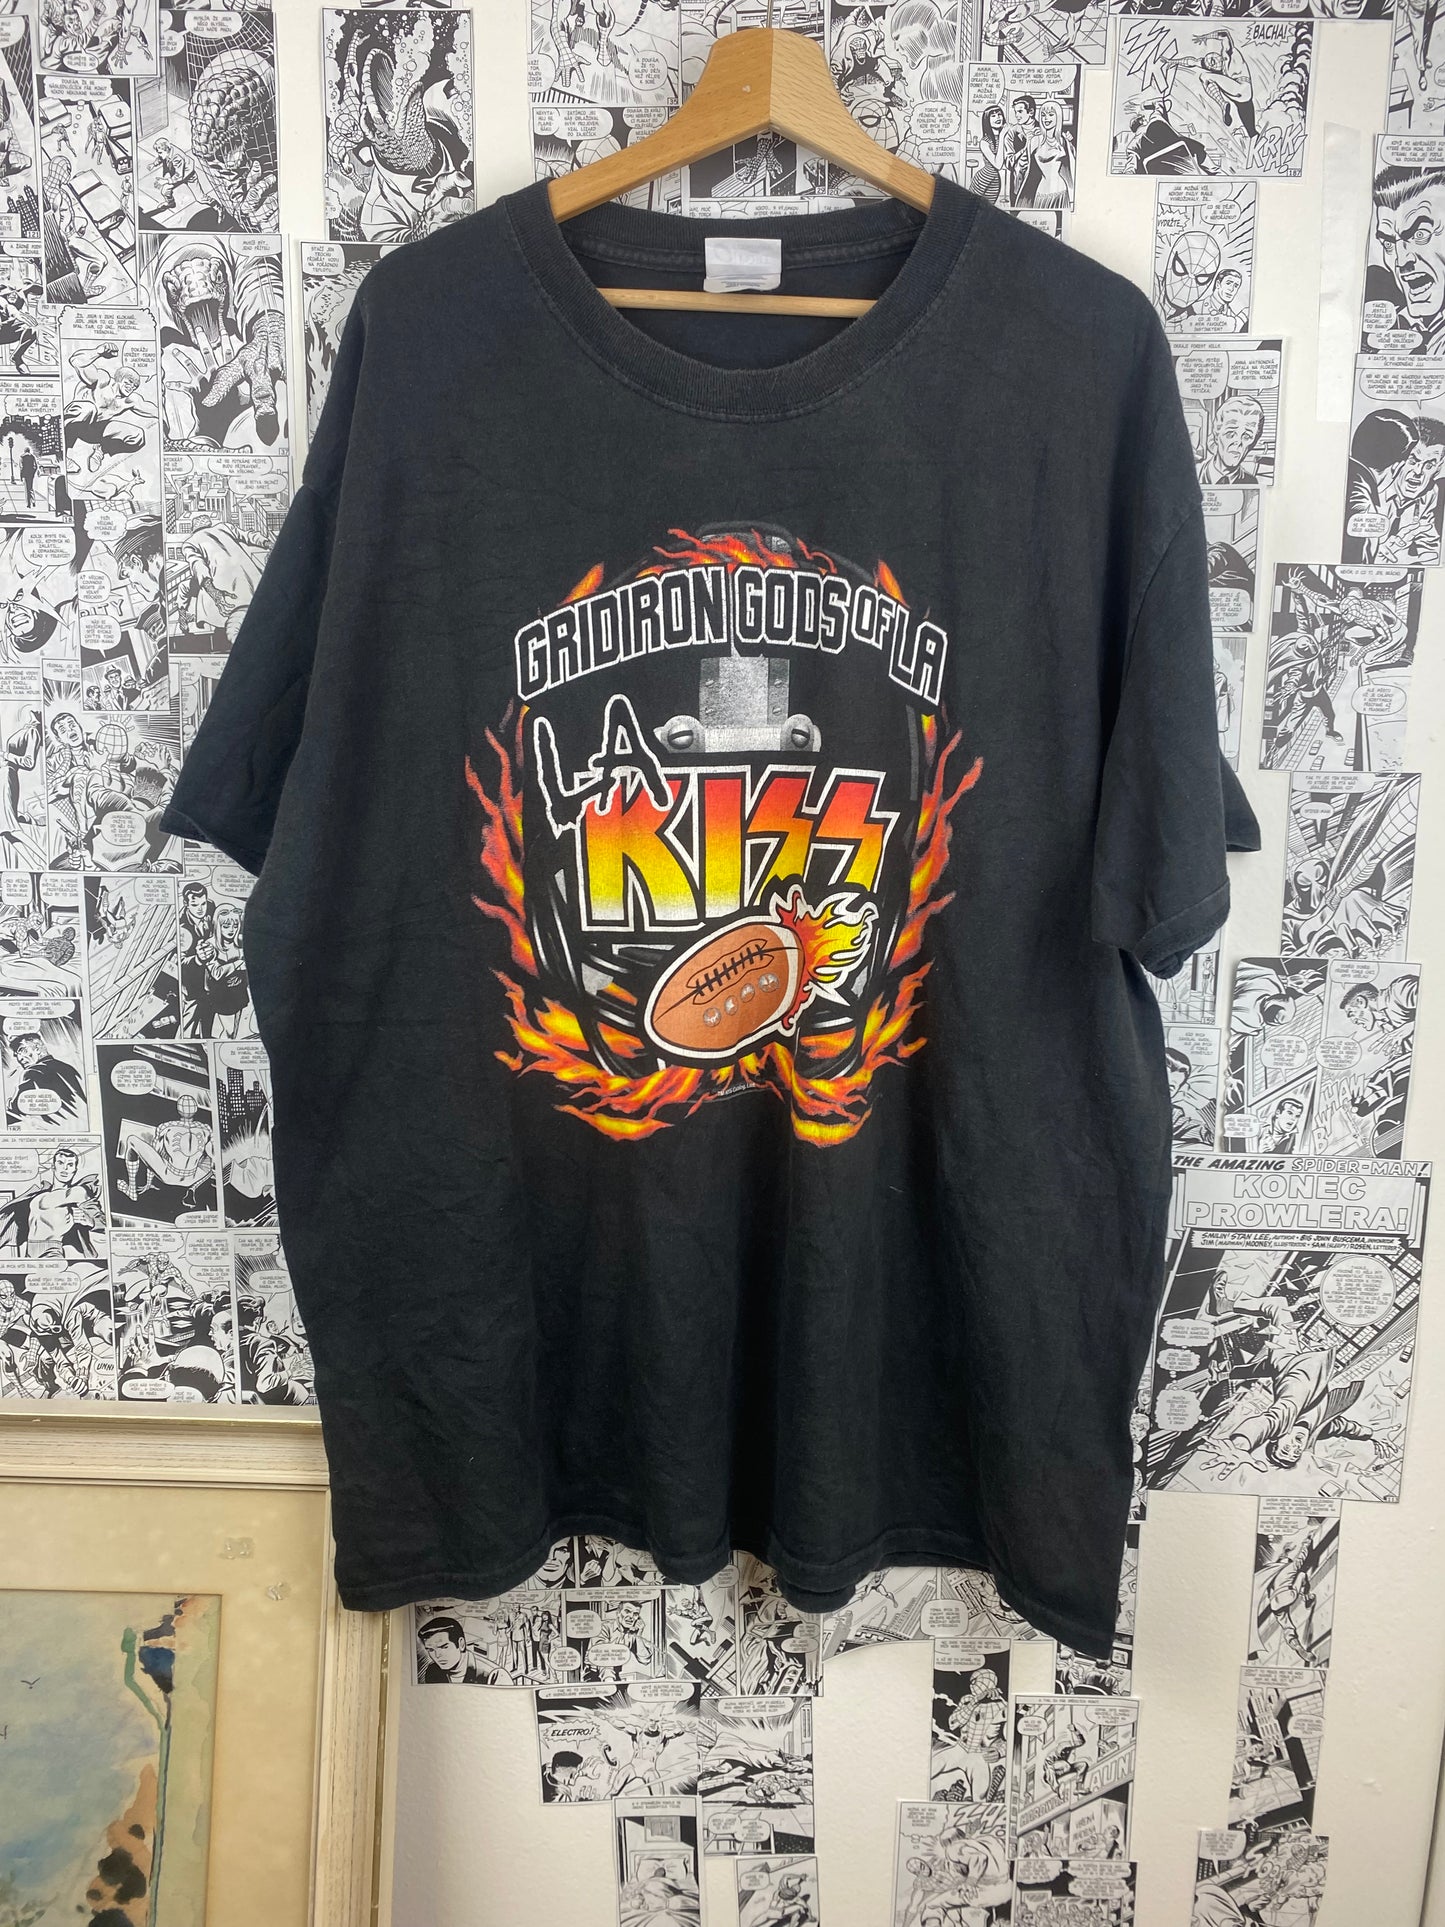 Vintage Kiss “Kings of LA” t-shirt - size XL